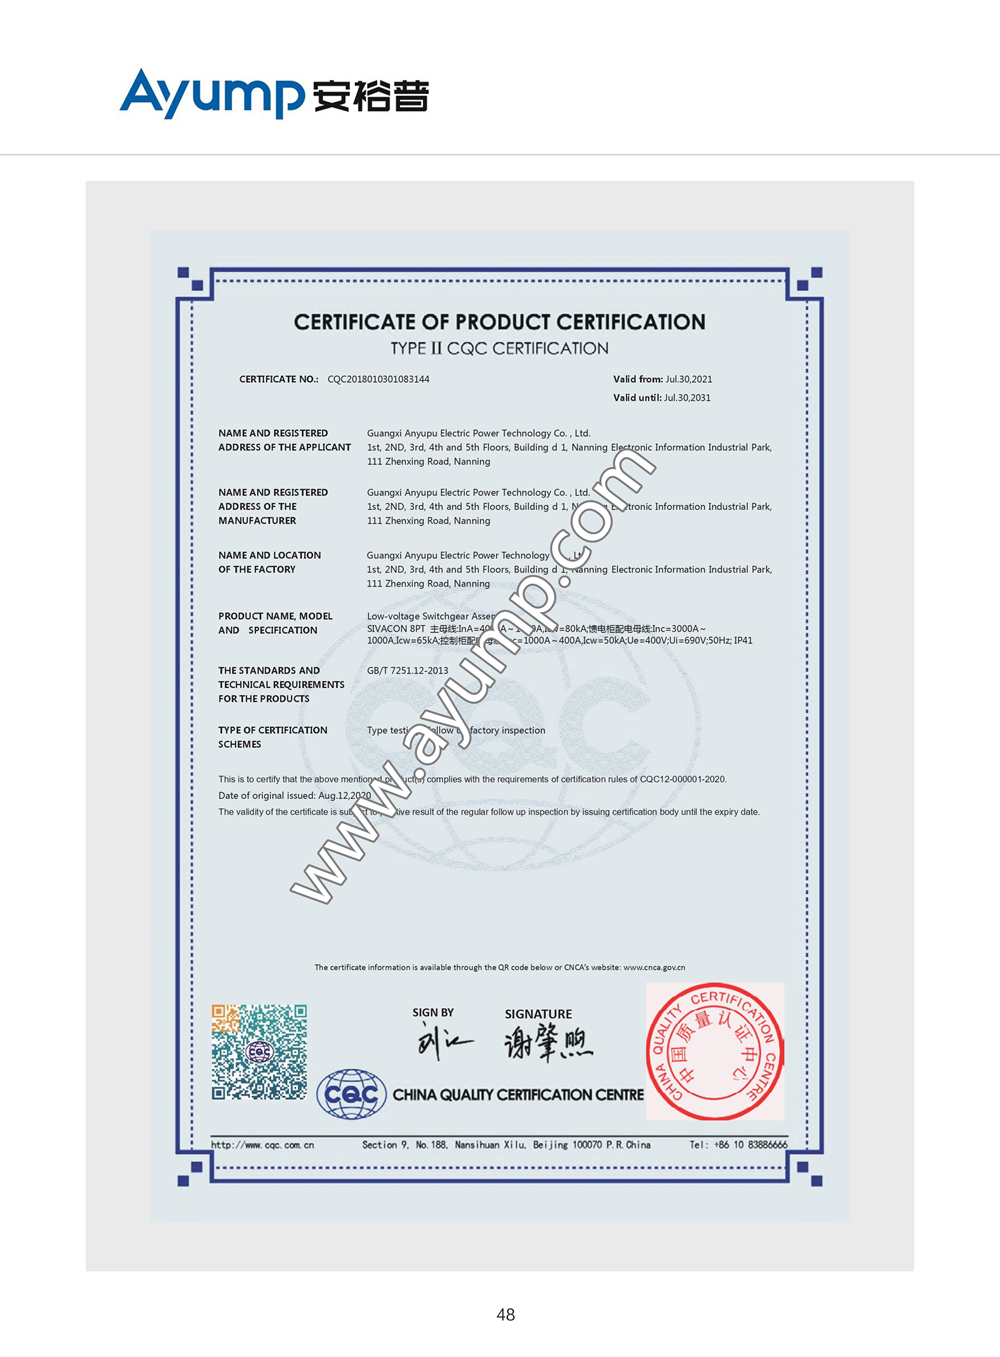 8PT低压成套开关设备国家强制性产品认证证书Ⅱ型自愿认证 